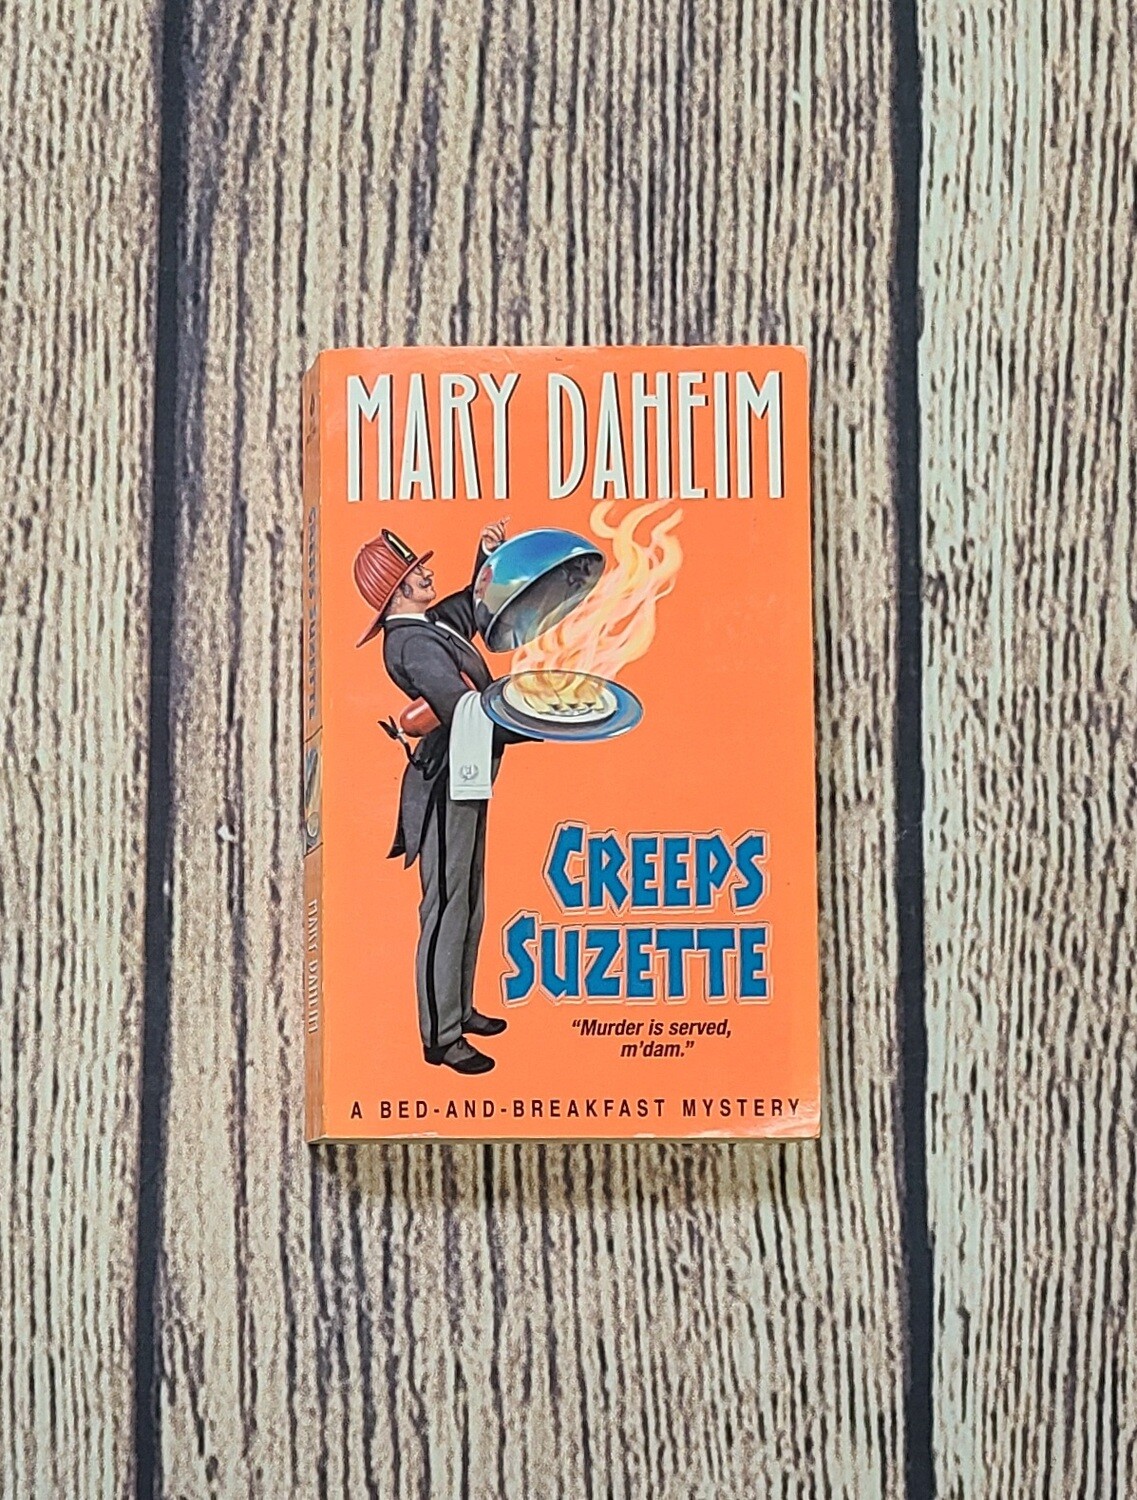 Creeps Suzette by Mary Daheim